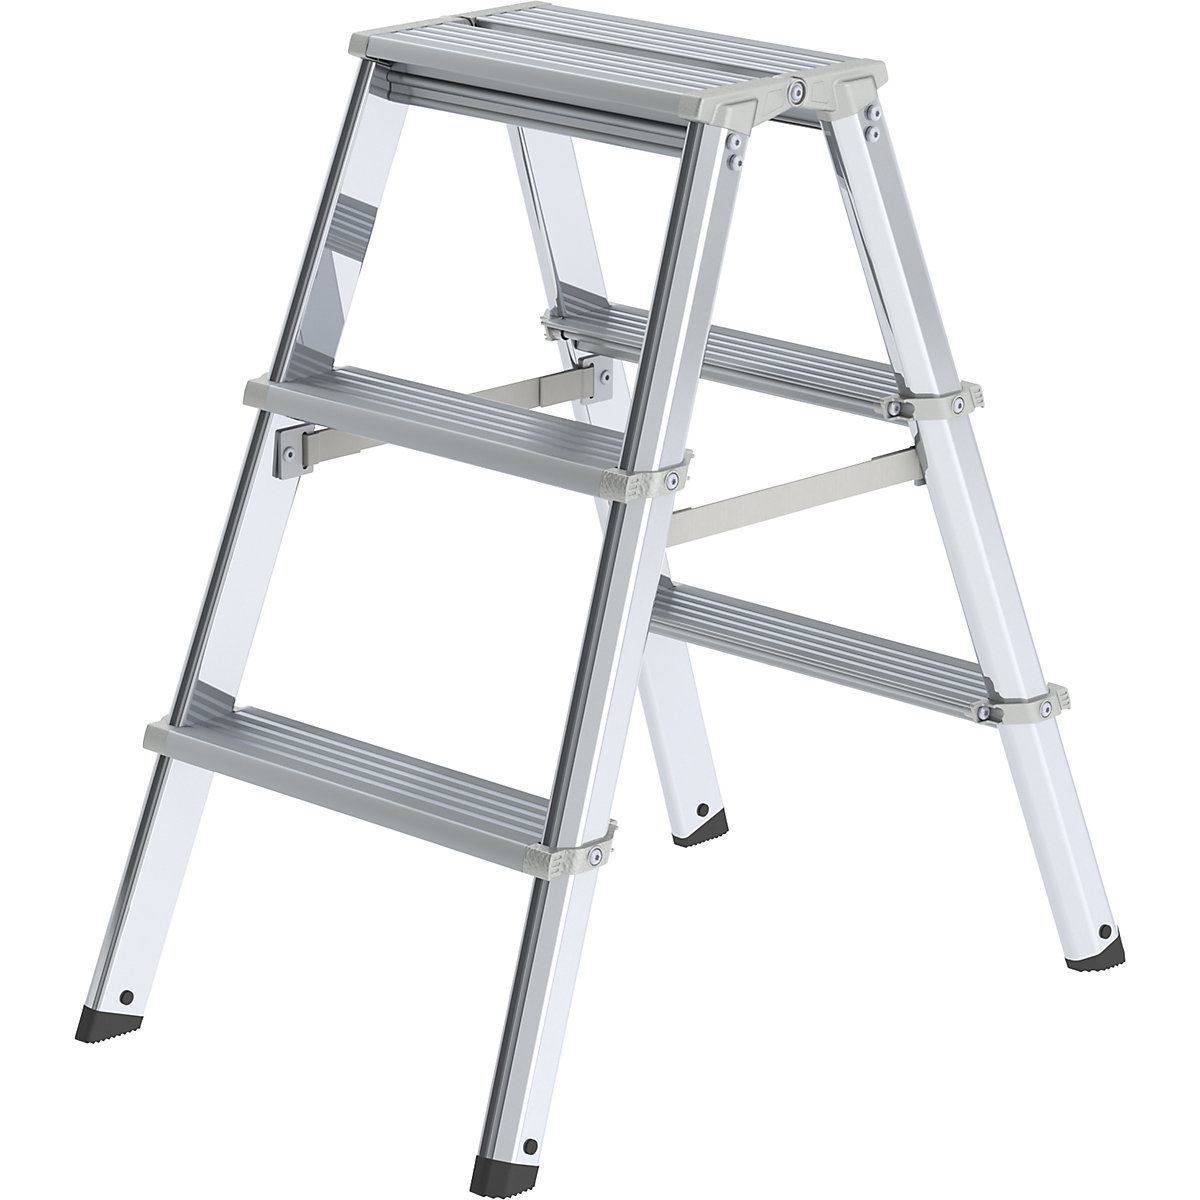 Hliníkový stojaci rebrík so stupňami, pochôdzny z dvoch strán – MUNK